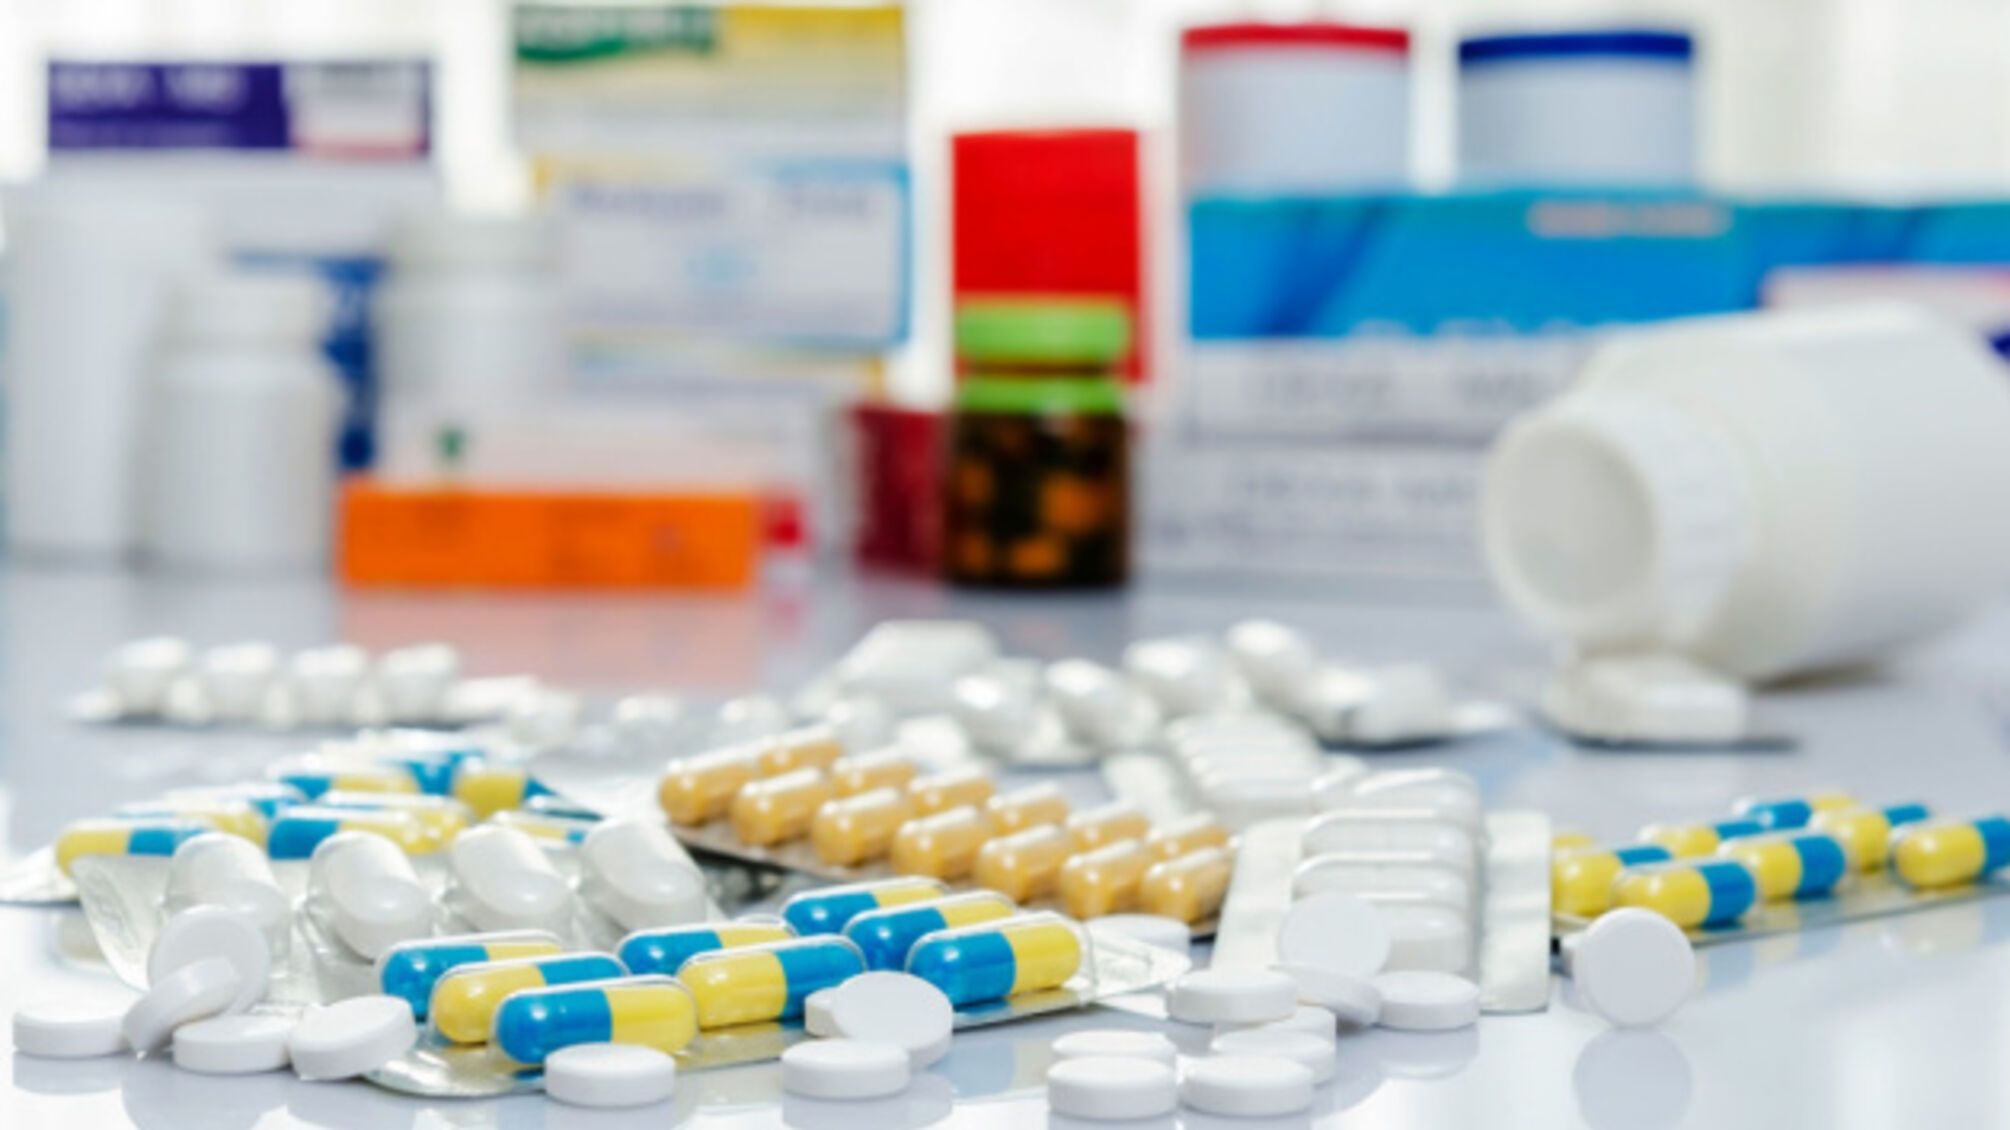 В Одесской области медики занимались закупкой препаратов по завышенным ценам: убыток составил почти 2,5 млн грн